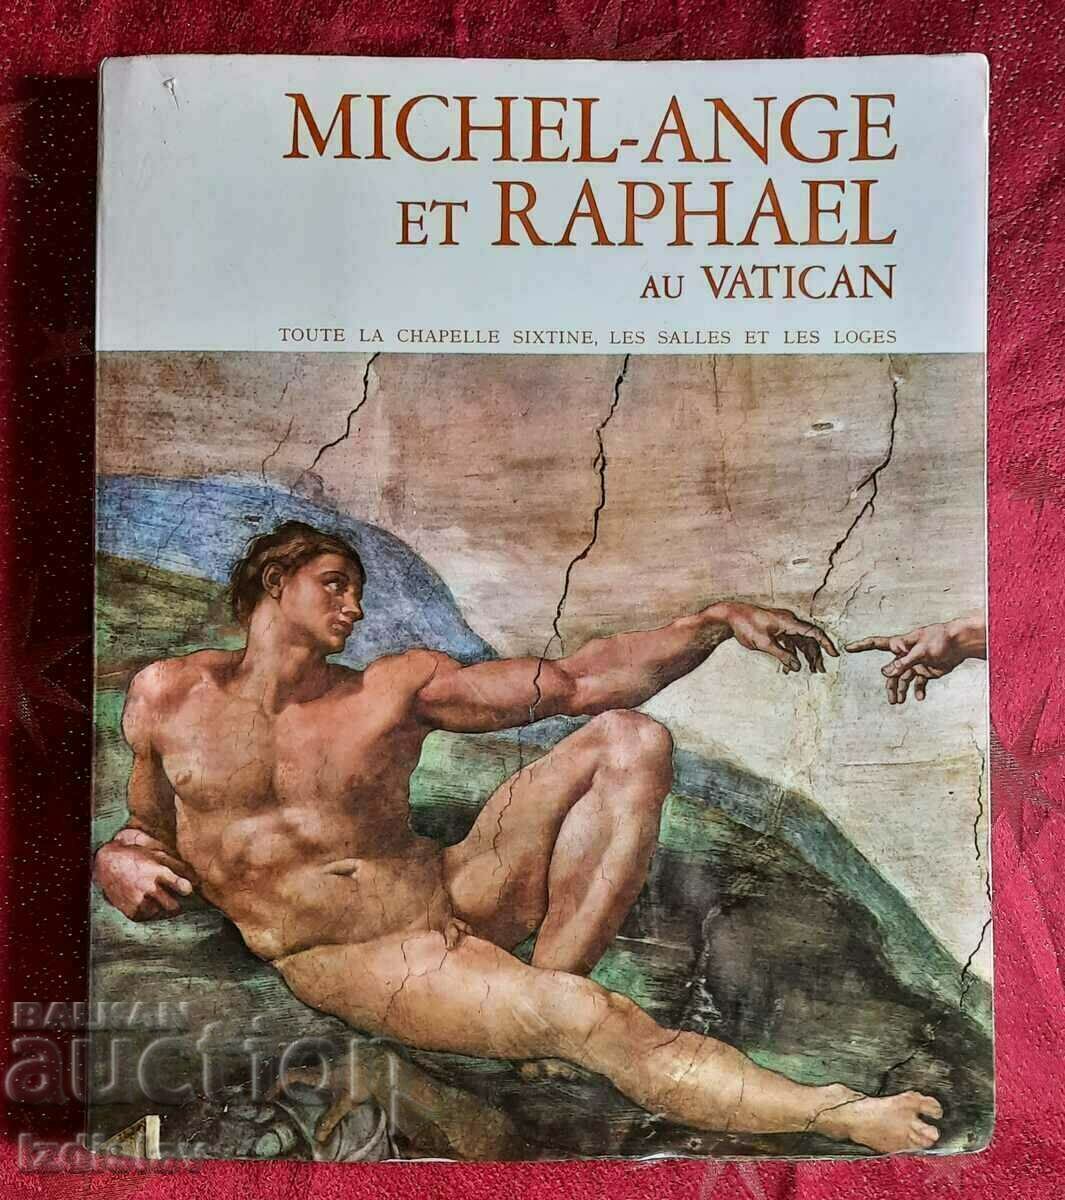 Album de lux pentru Michelangelo și Raphael